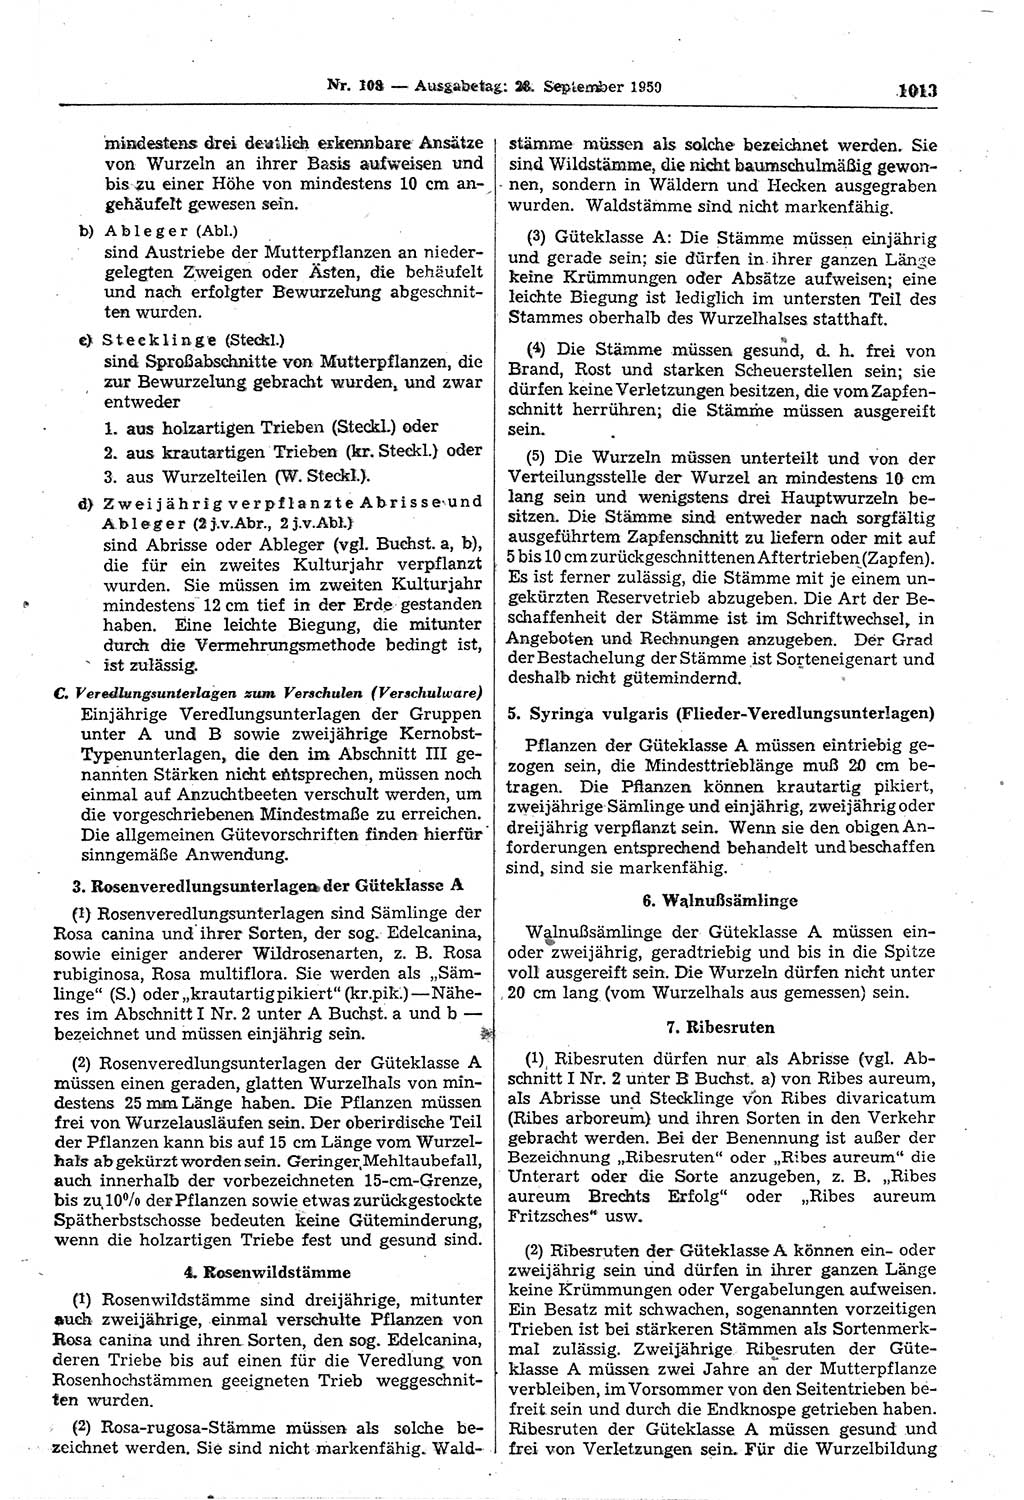 Gesetzblatt (GBl.) der Deutschen Demokratischen Republik (DDR) 1950, Seite 1013 (GBl. DDR 1950, S. 1013)